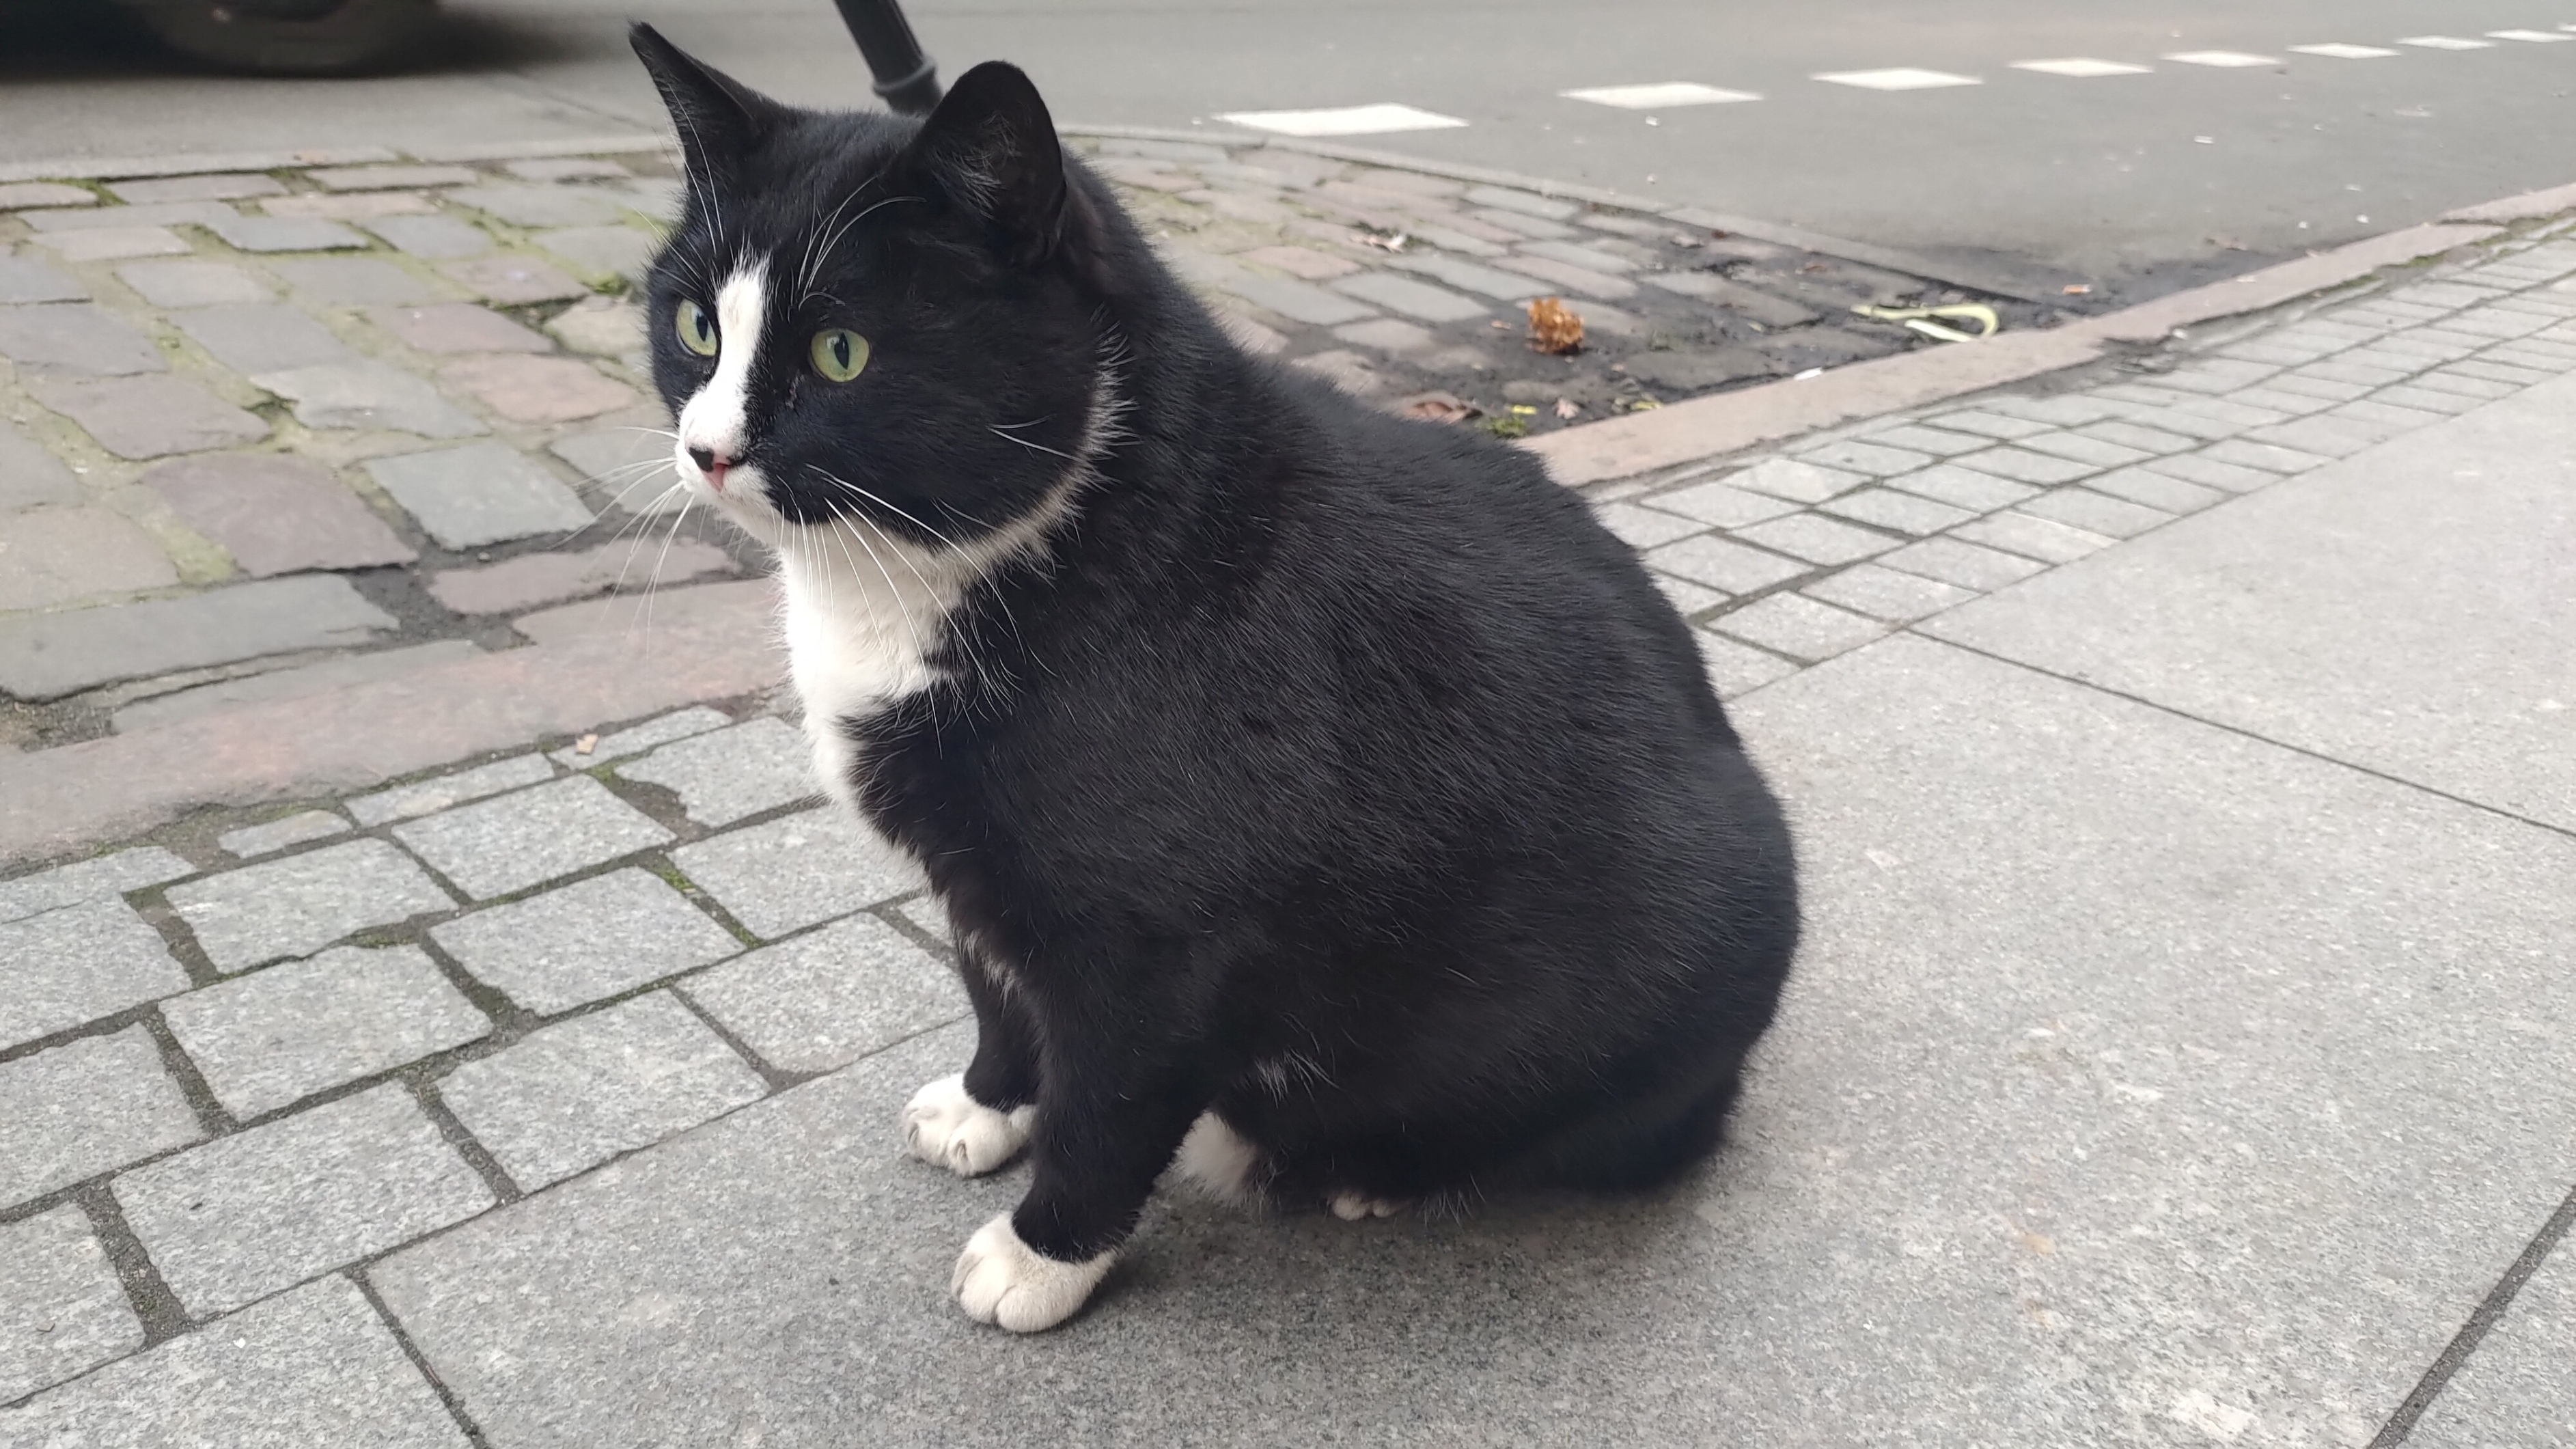 القط جاسيك يجذب السياح لمدينة بولندية